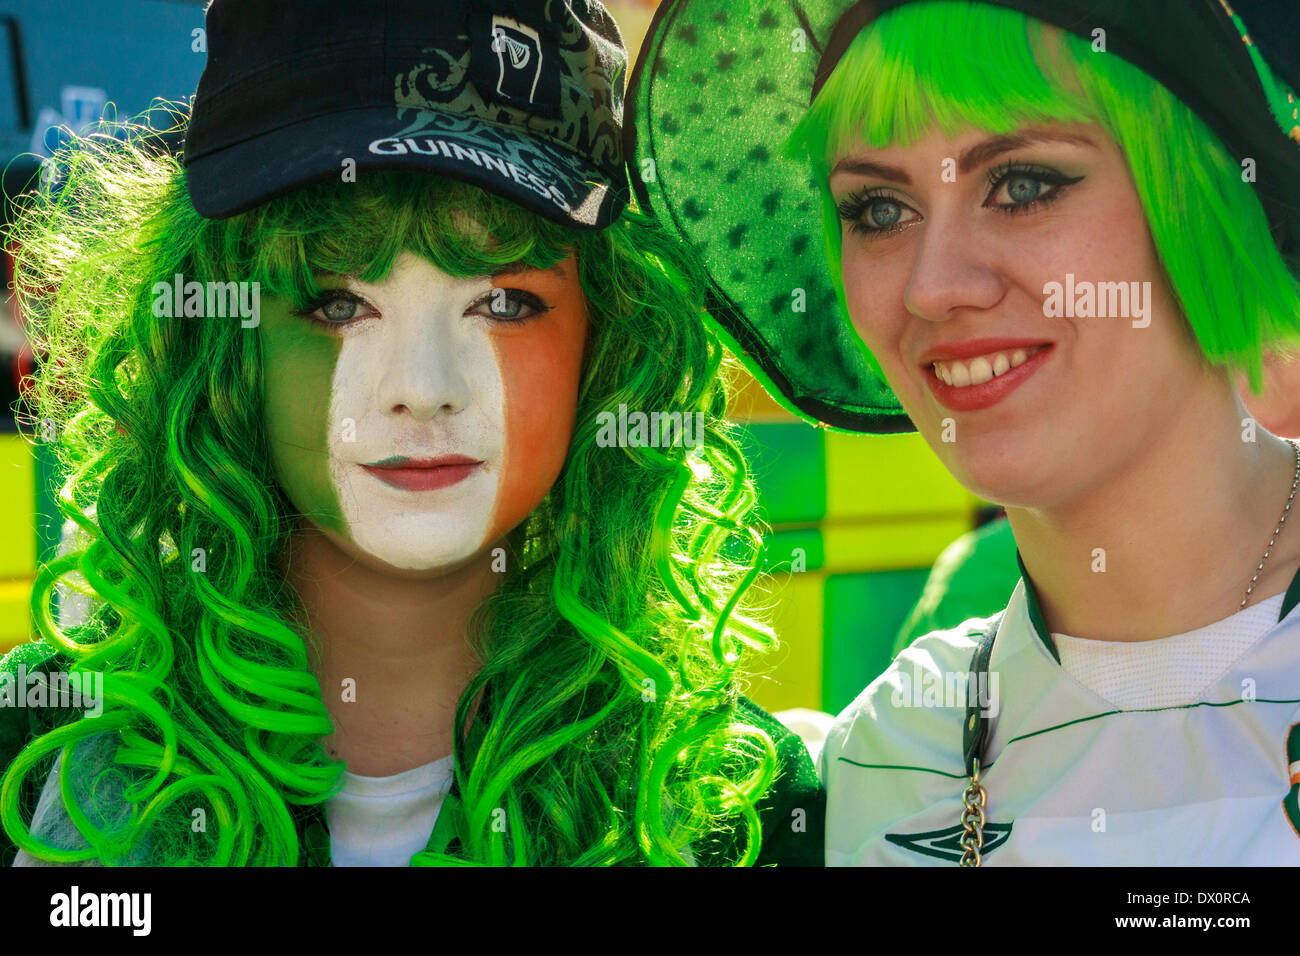 Zwei junge Frauen, eine mit ihrem Gesicht in den Farben der irischen Tricolor, während der Feierlichkeiten zum St. Patrick's Day. Stockfoto